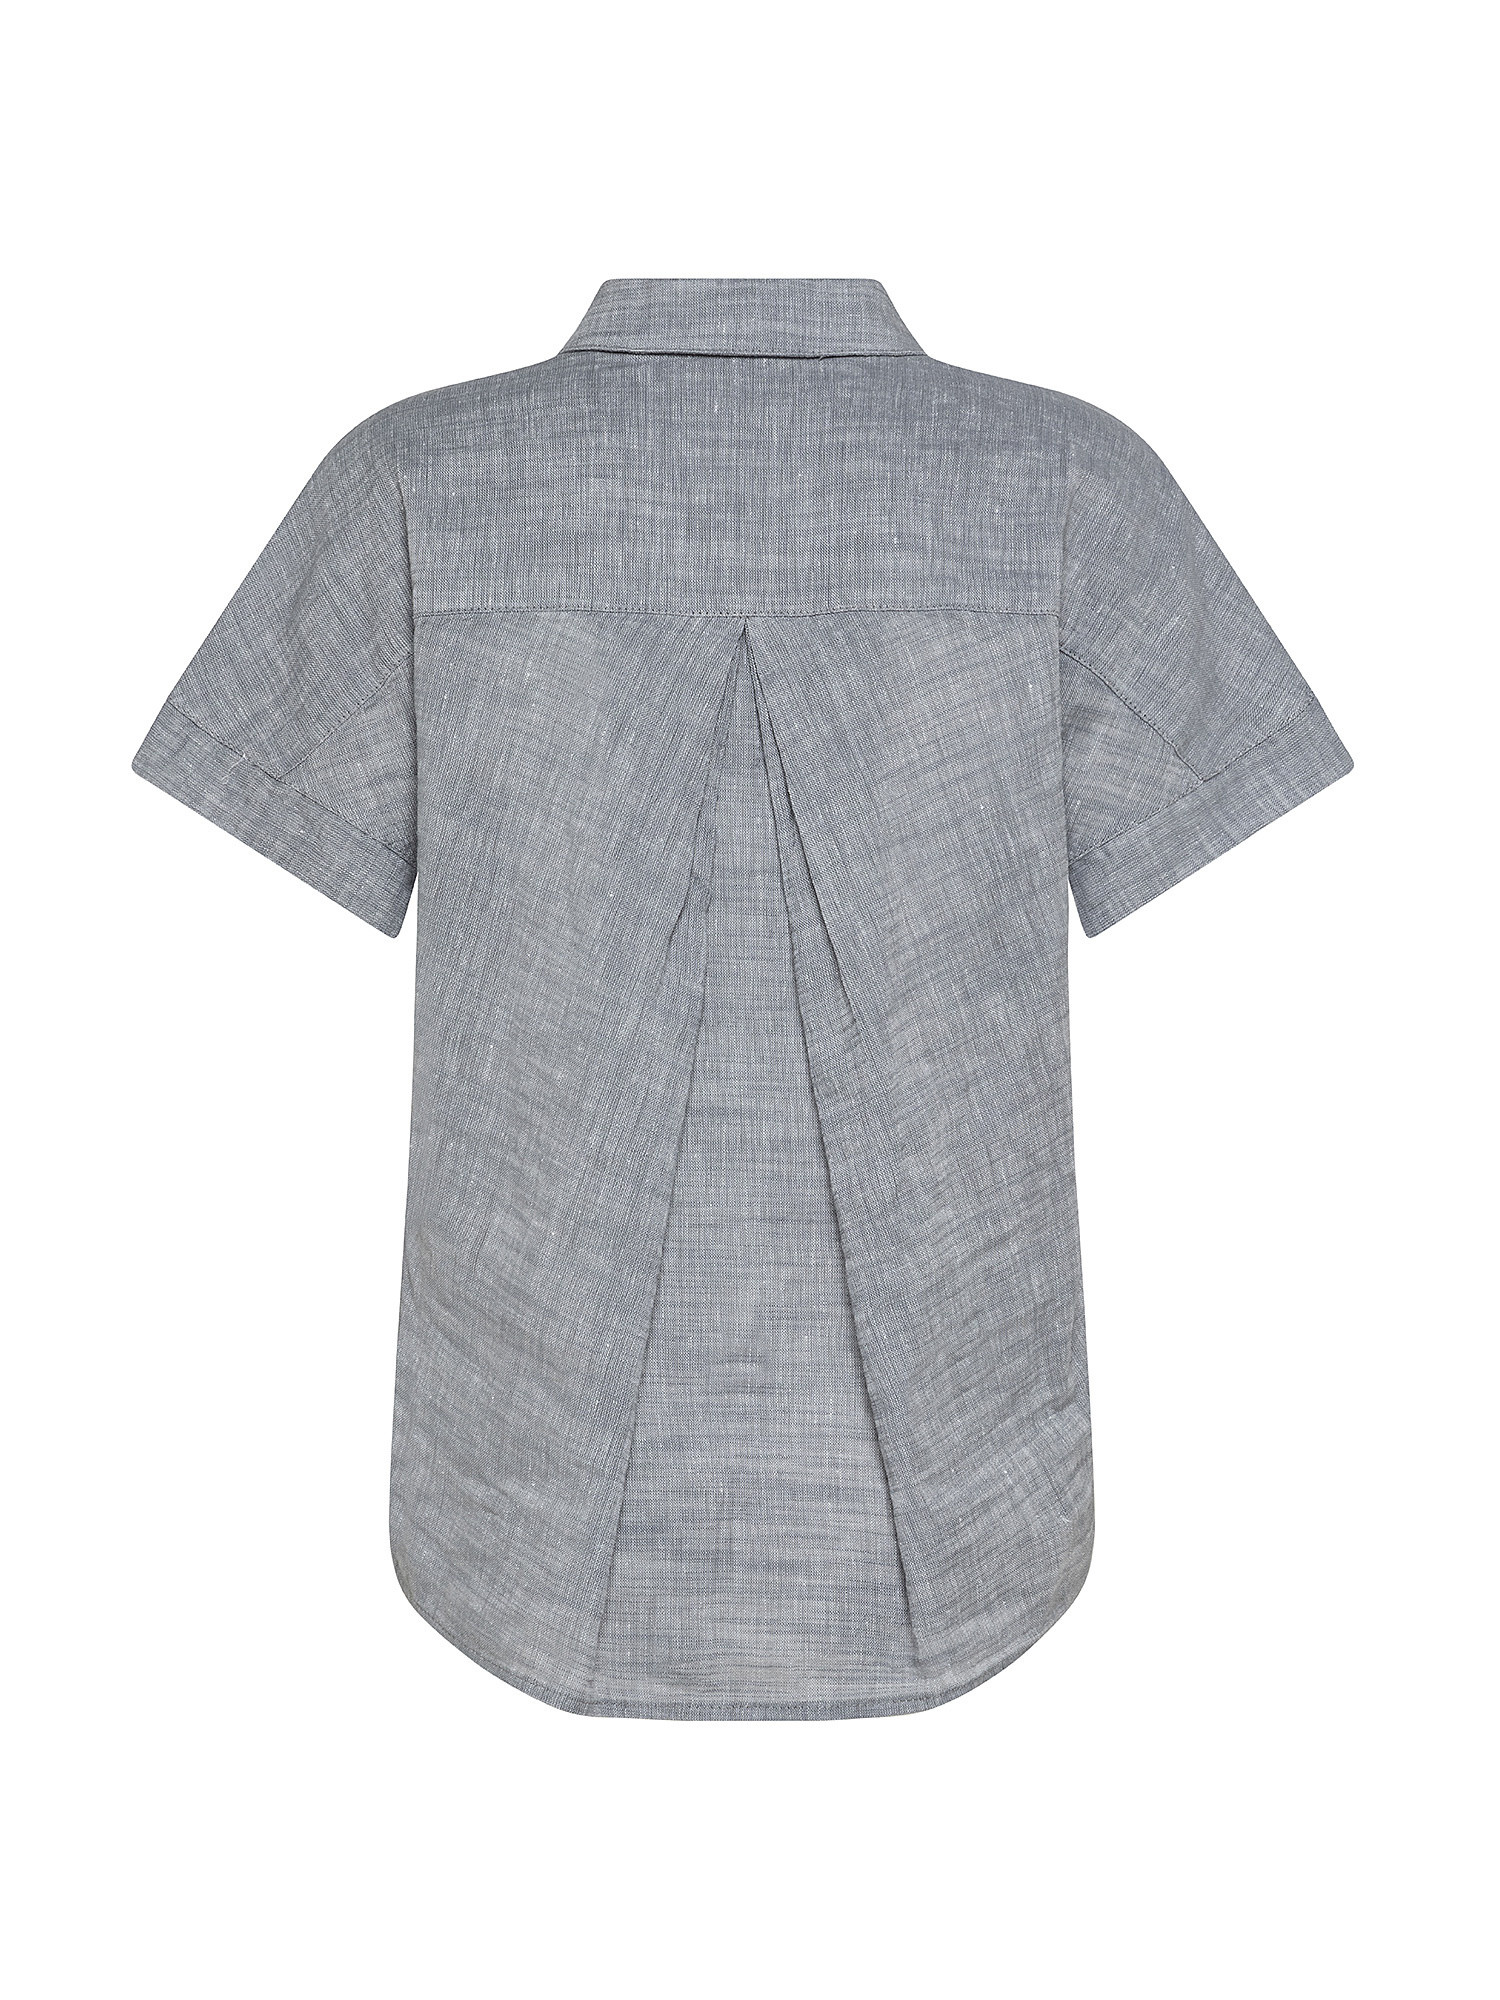 Camicia SL in misto lino, Grigio chiaro, large image number 1